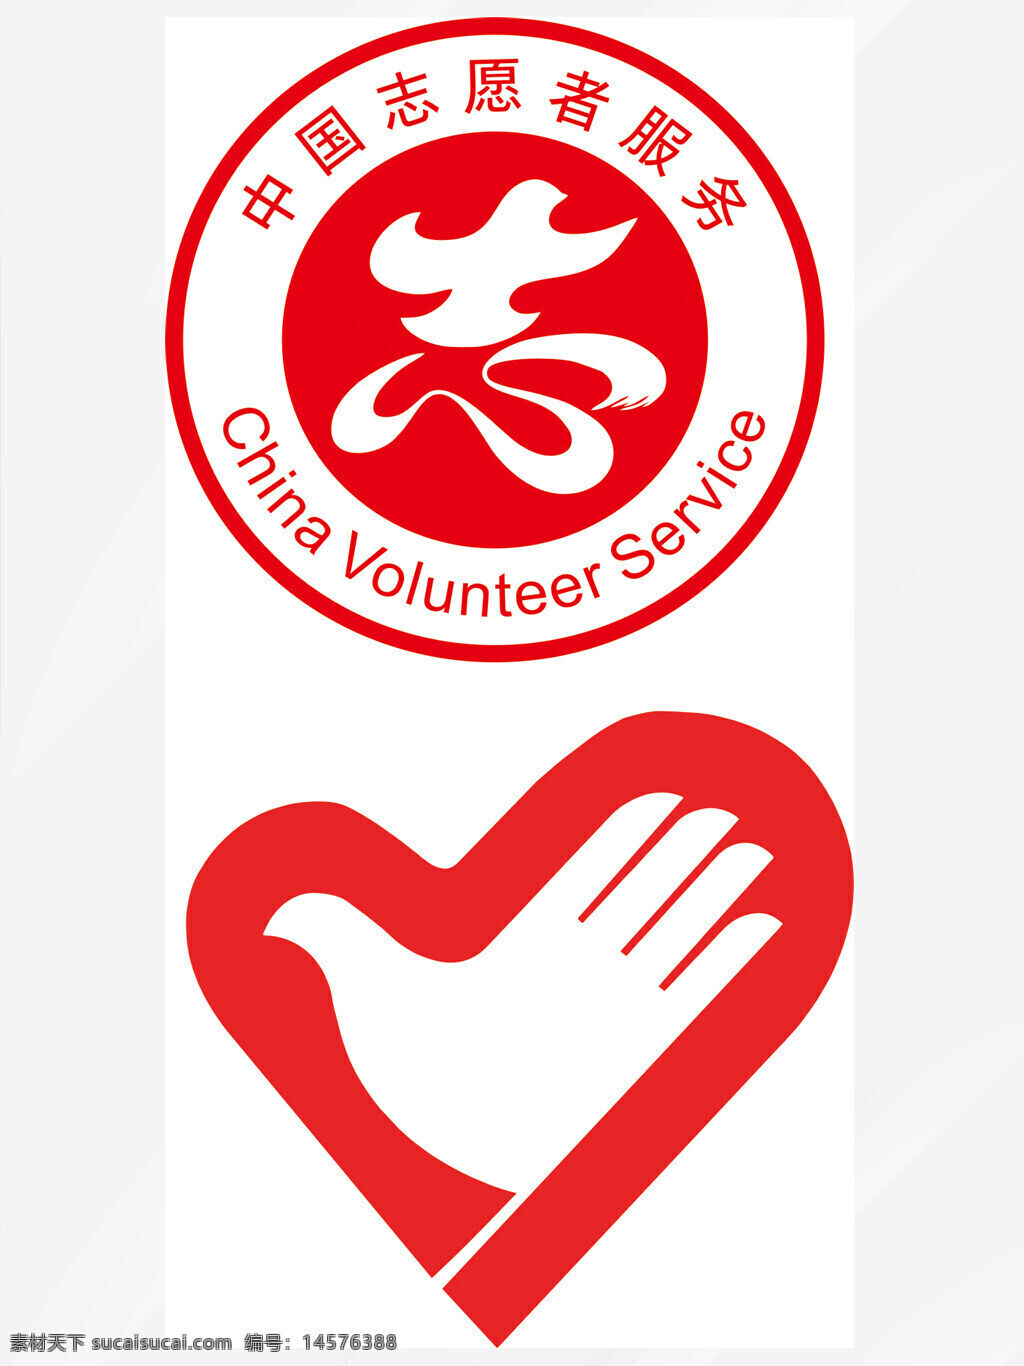 中国志愿服务 志愿者标志 志愿服务 服务队 志愿logo 志愿者logo 青少年志愿者 志愿者标识 志愿者服务